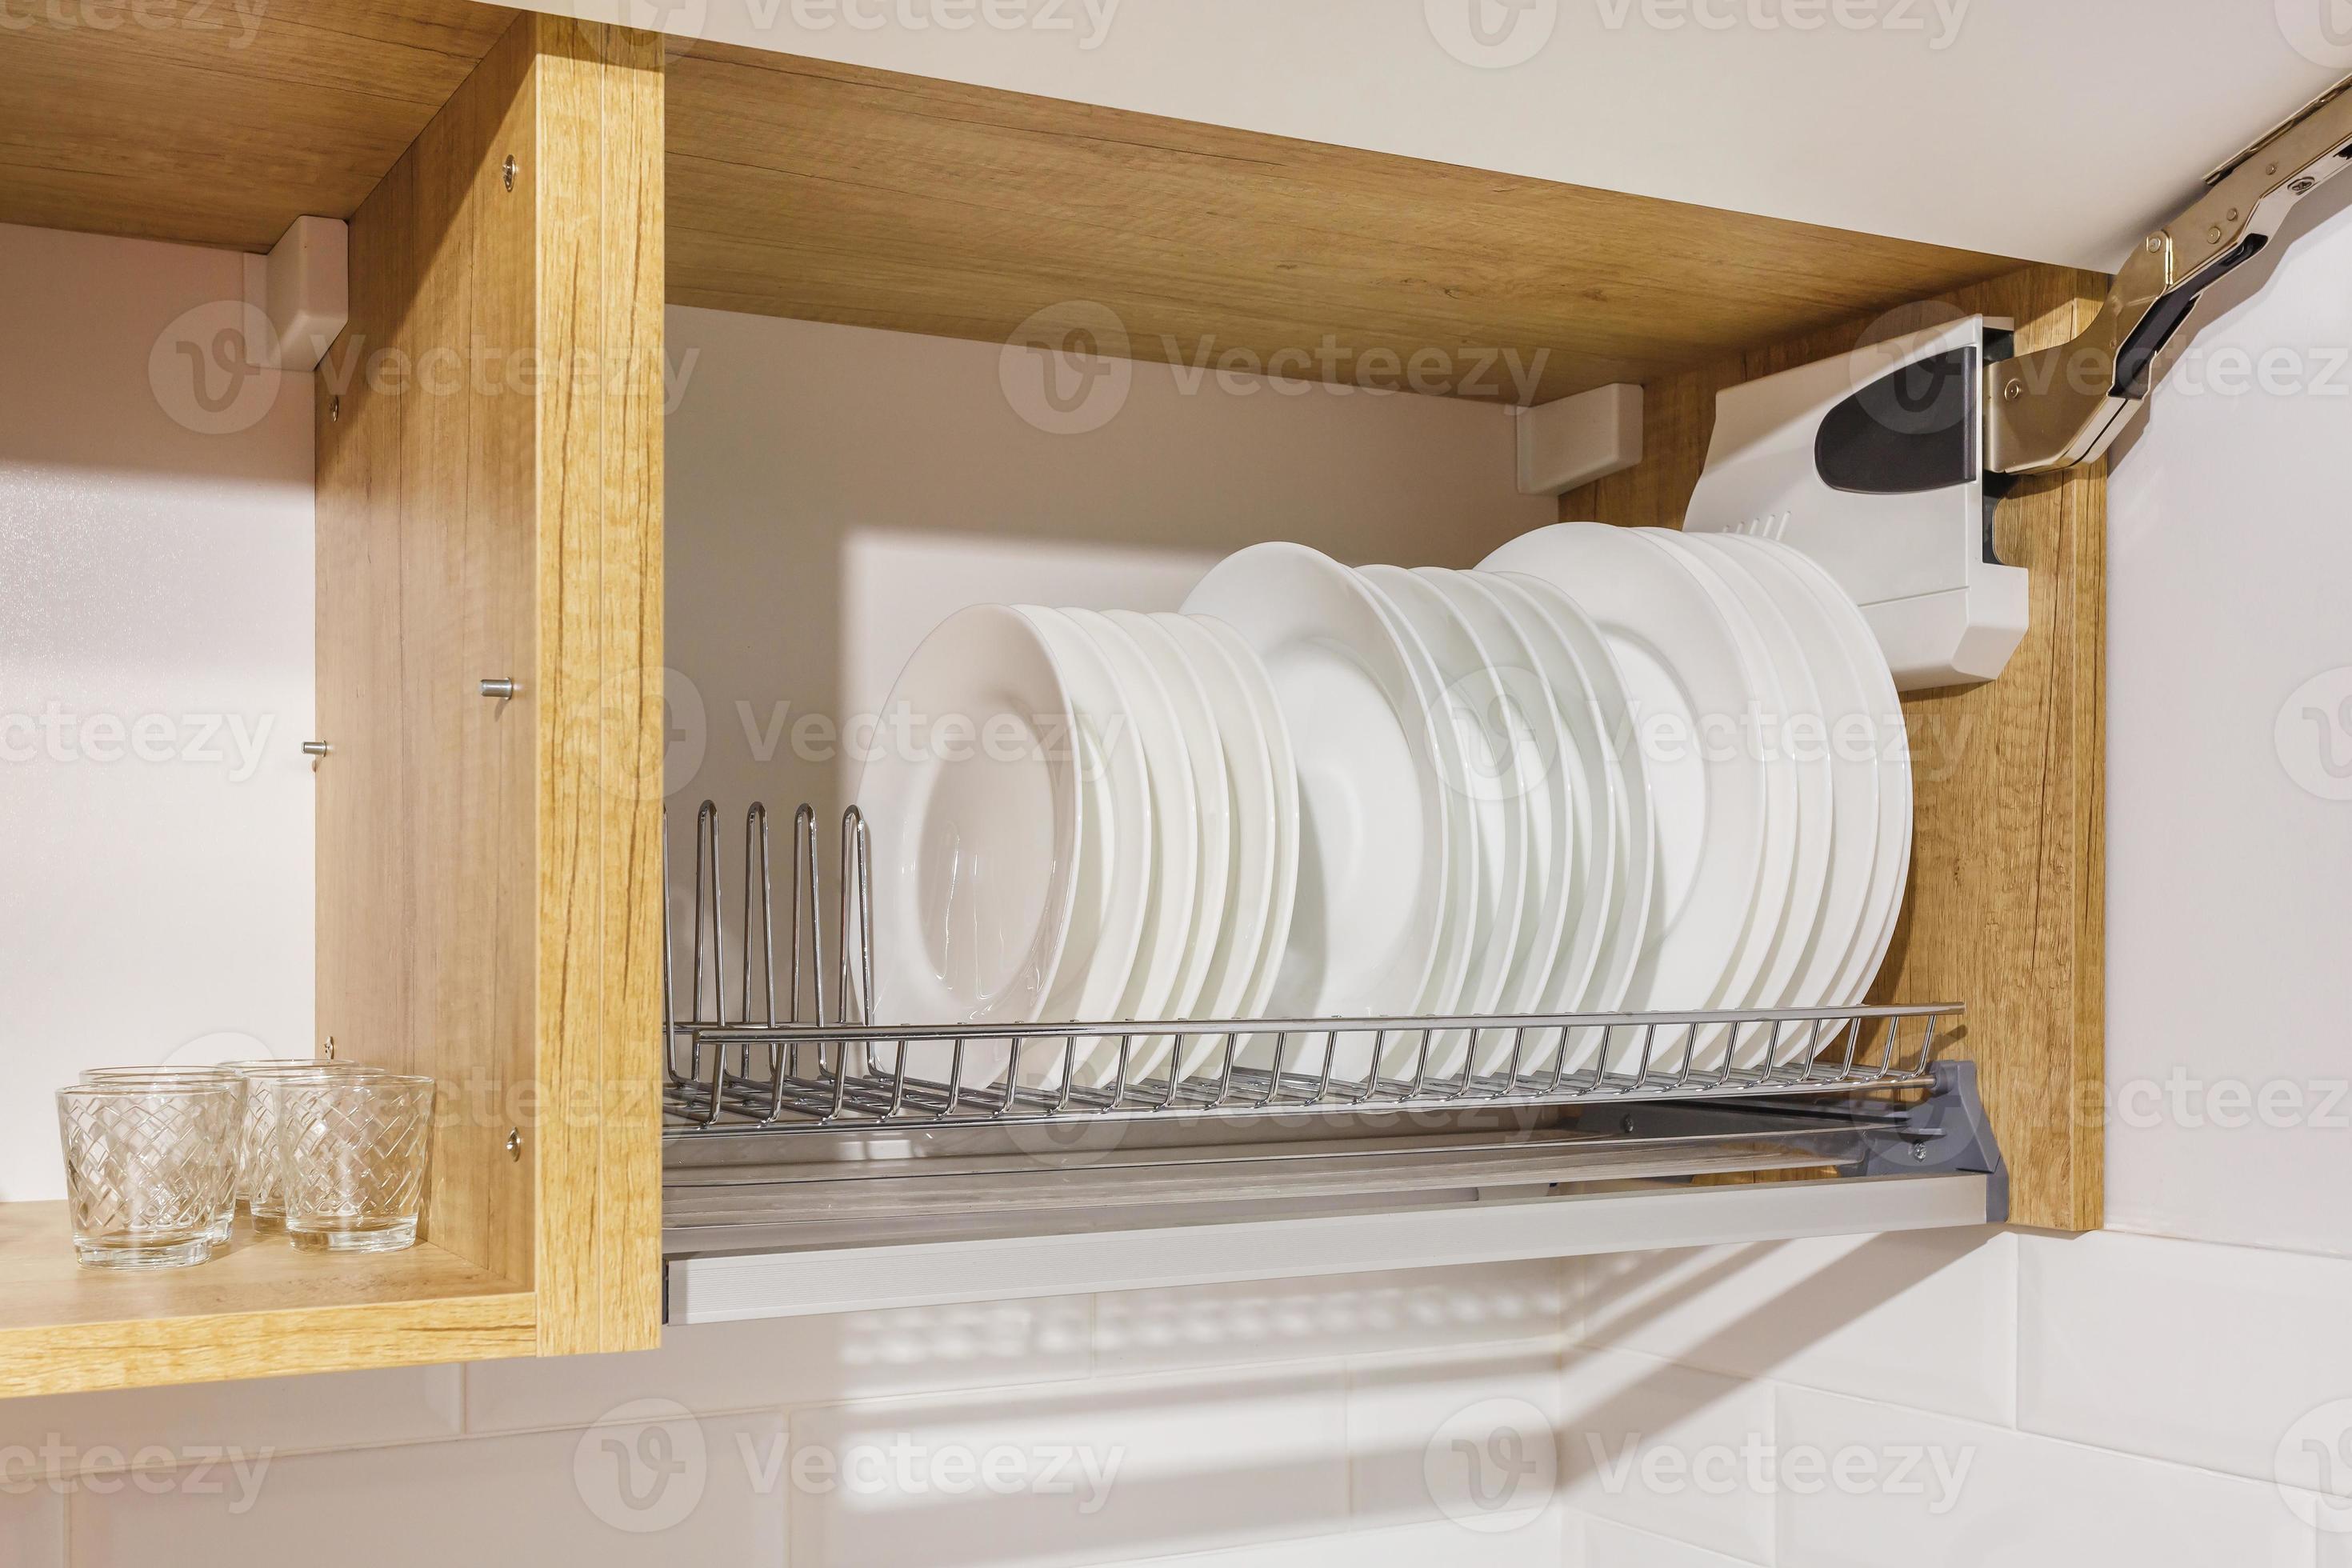 Satz Teller, Tassen auf dem Regal im Küchenschrank 10924195 Stock-Photo bei  Vecteezy